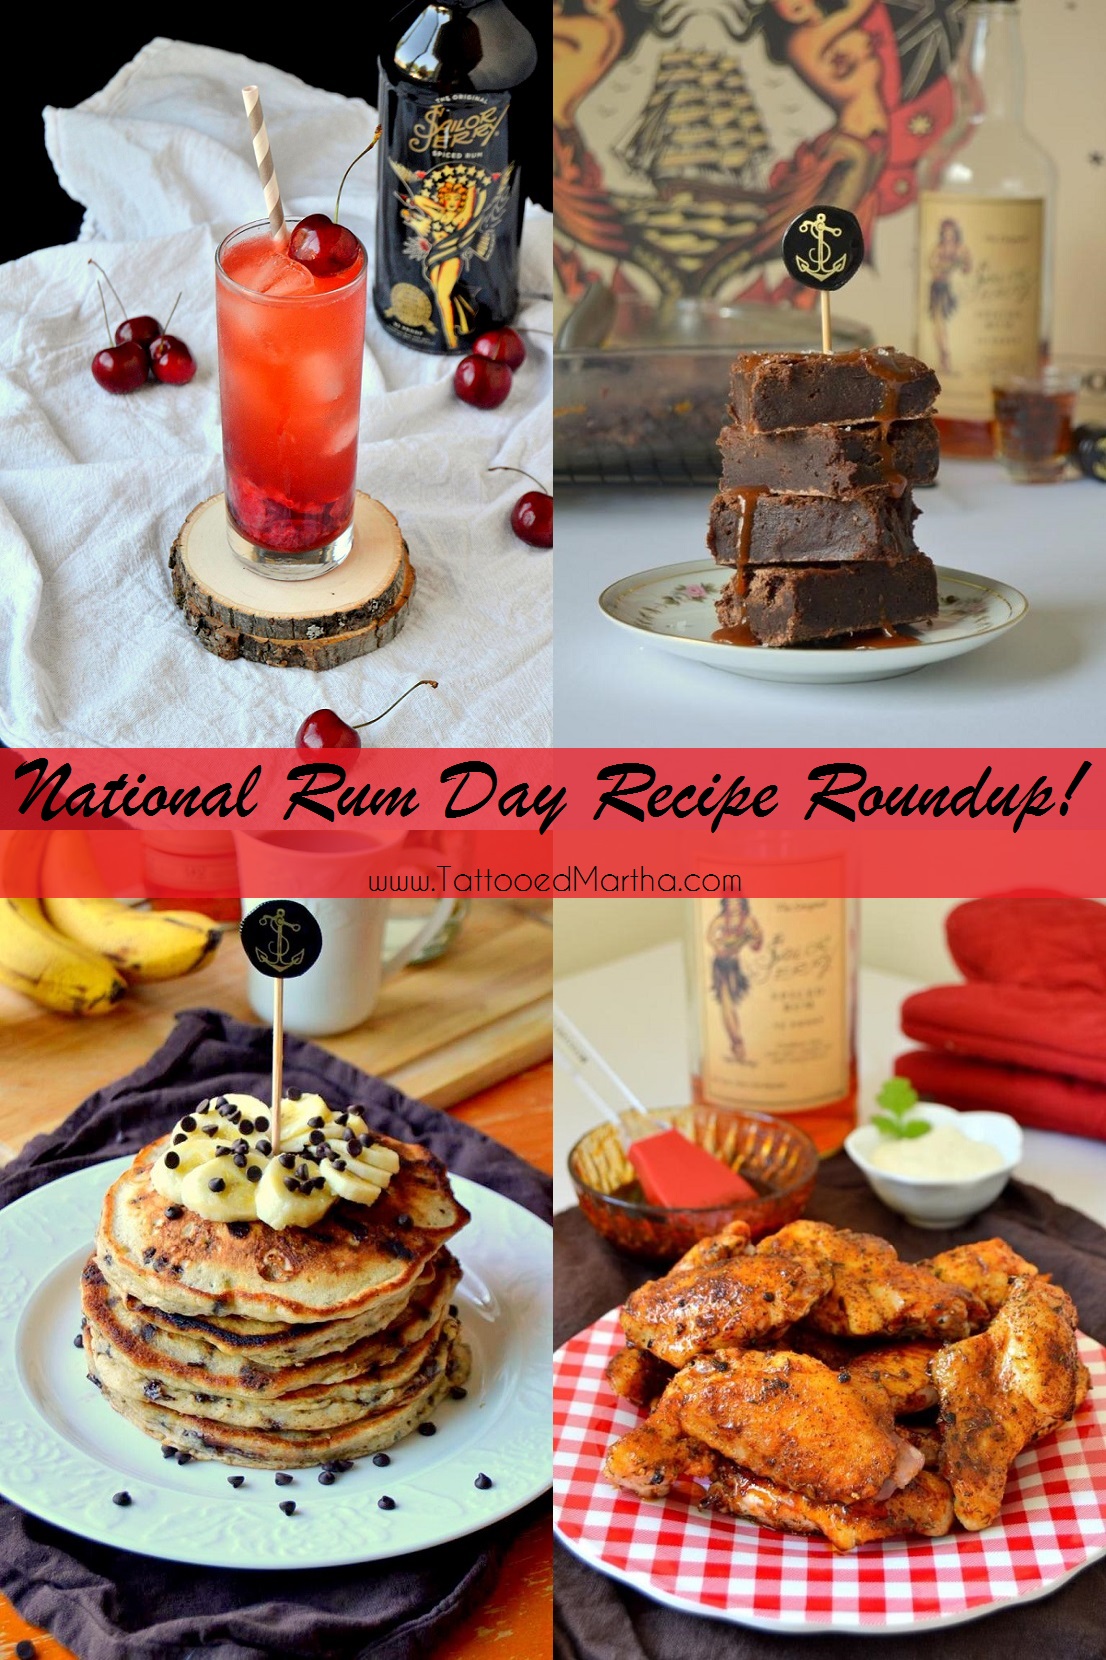 National Rum Day Recipe Roundup